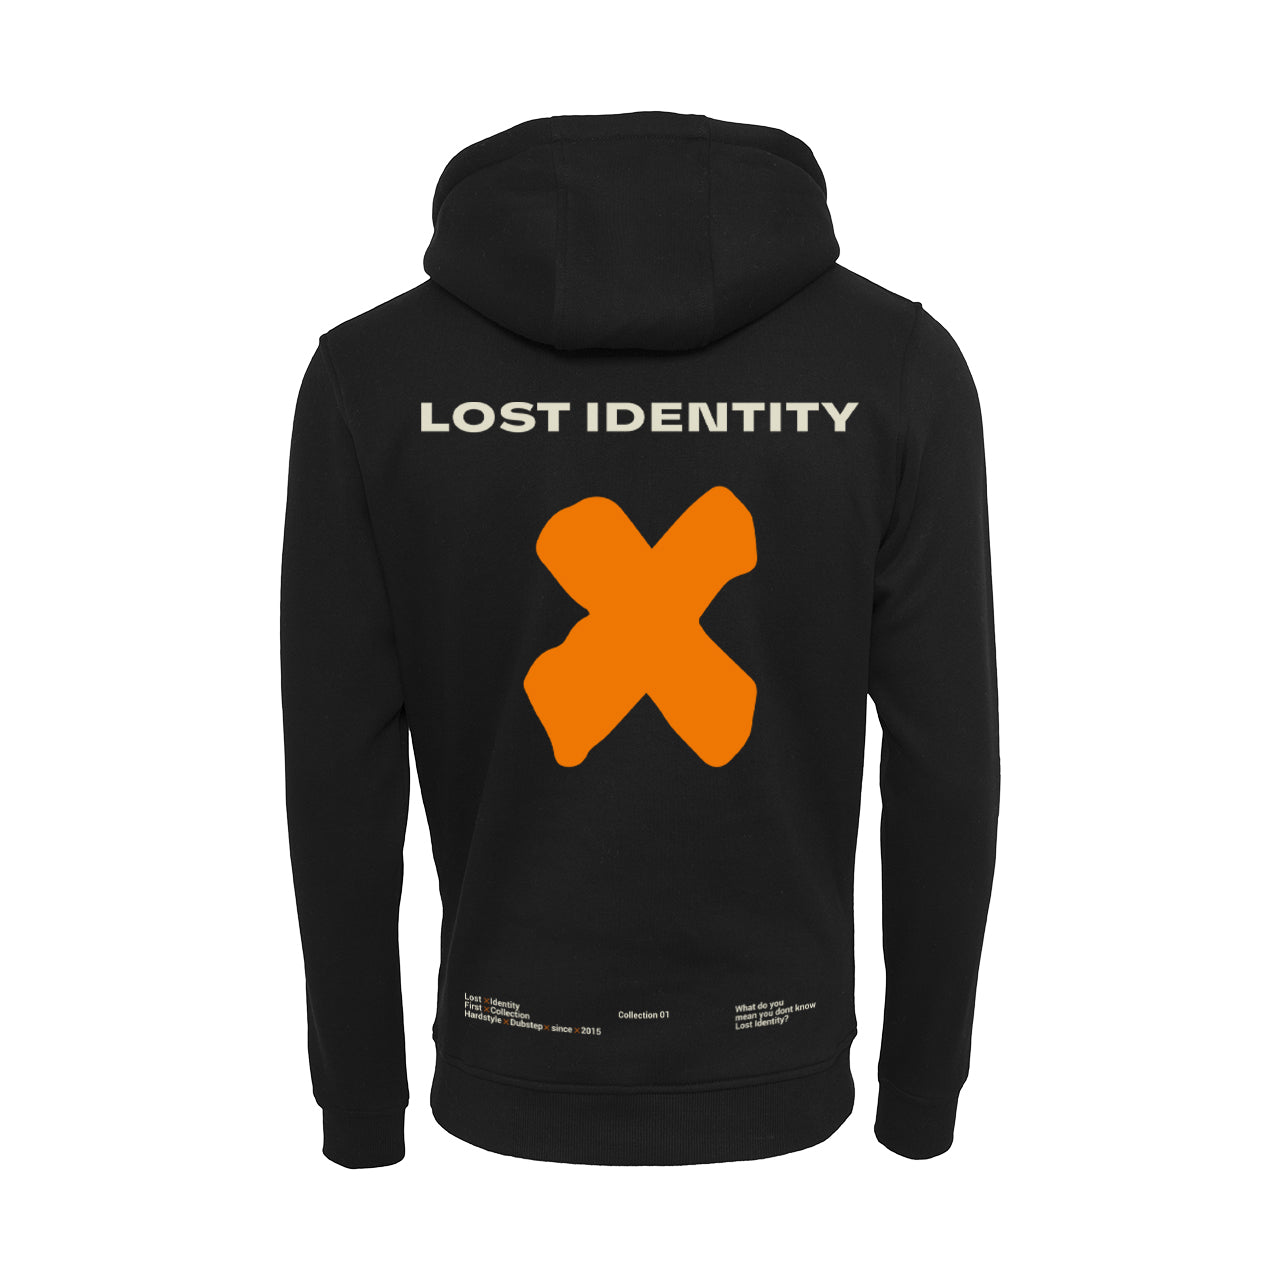 Lost Identity - X Zipper